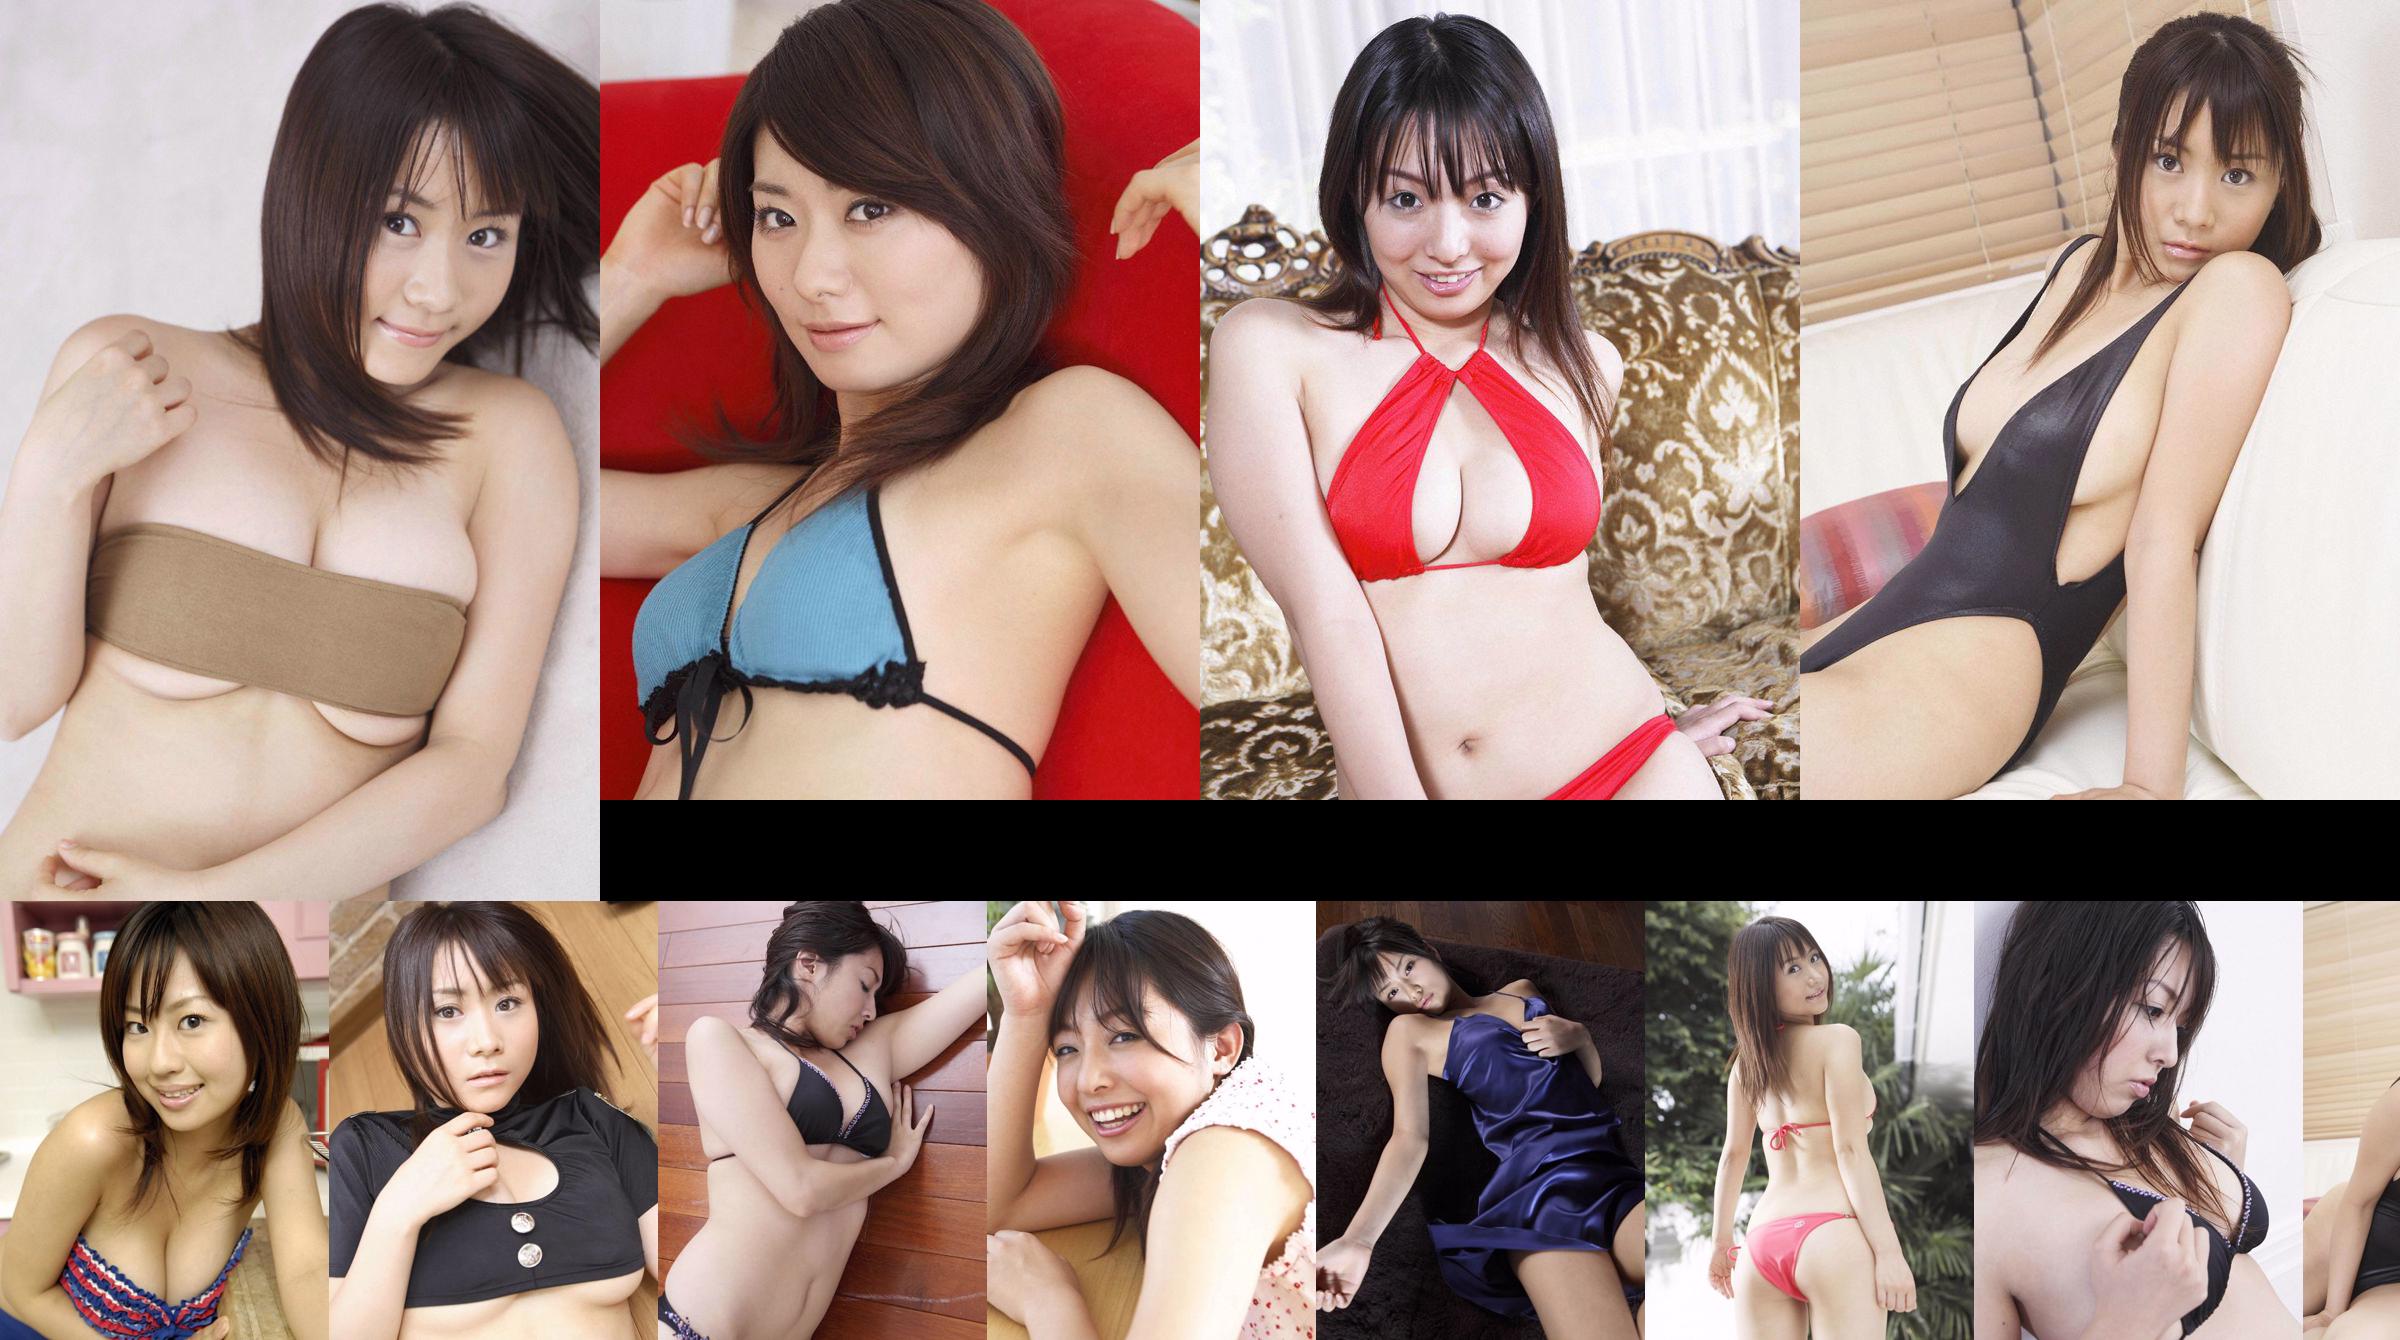 [Wanibooks] NO.37 Ai Arakawa, Hitomi Kaikawa, Hitomi Kitamura, Naomi I, Chii Matsuda Photo Collection No.35bbcc Página 1